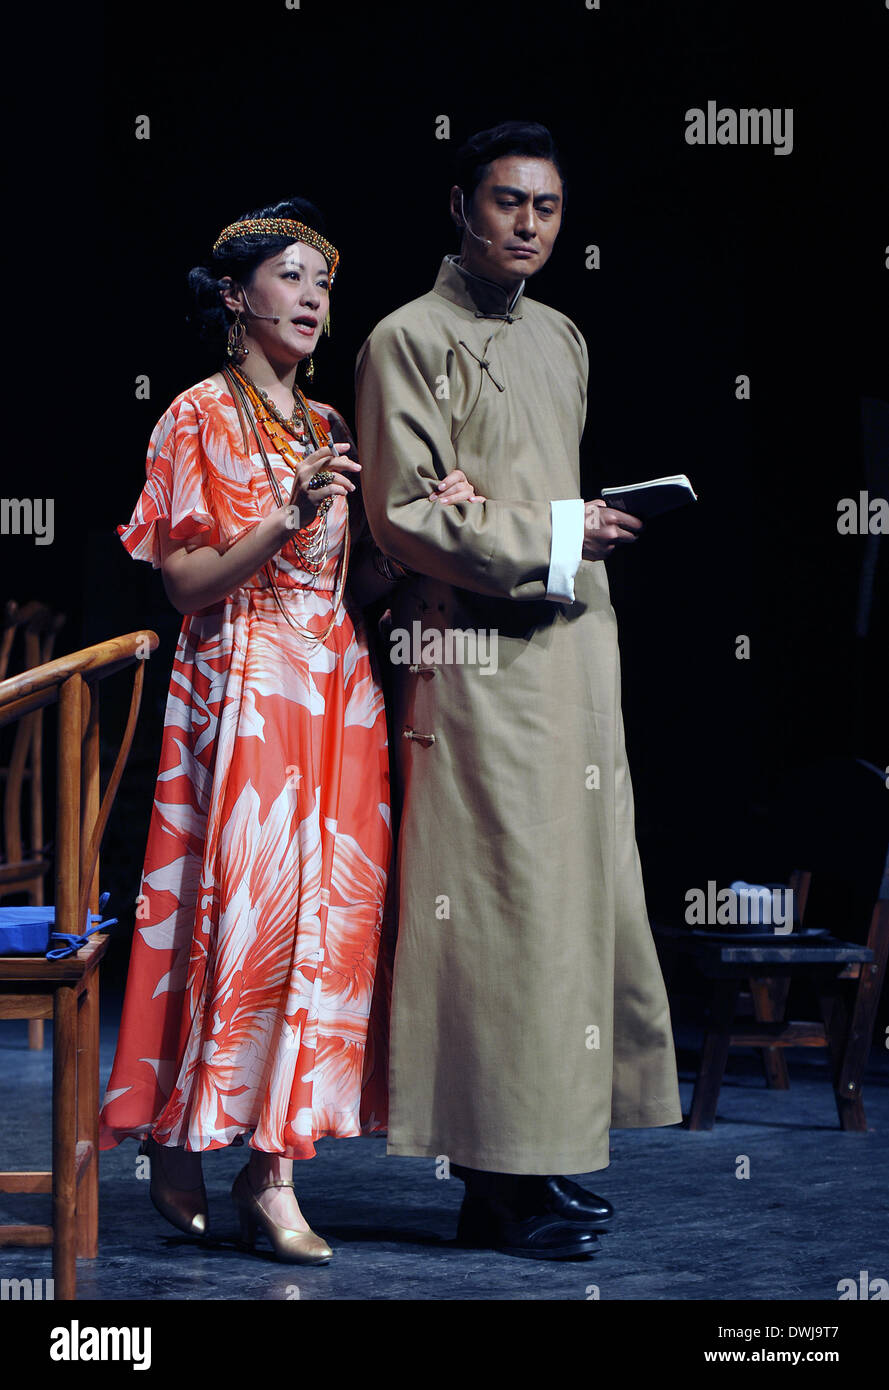 (140310) -- BEIJING, 10 de marzo de 2014 (Xinhua) -- dos intérpretes ensayan la comedia "La Gaviota" en el teatro occidental de la Torre del Tambor en Beijing, capital de China, 9 de marzo de 2014. El juego, el último trabajo del director de teatro con base en Taiwán Stan Sheng-chuan Lai, es una adaptación de una comedia con el mismo nombre, escrita por el dramaturgo ruso Anton Chejov. Hará su debut en el Teatro Poly de Beijing el 14 de marzo junto con 'Tomo tu mano en la mía", otro nuevo trabajo de Stan Lai. (Xinhua/Li Yan) (LMM) Foto de stock